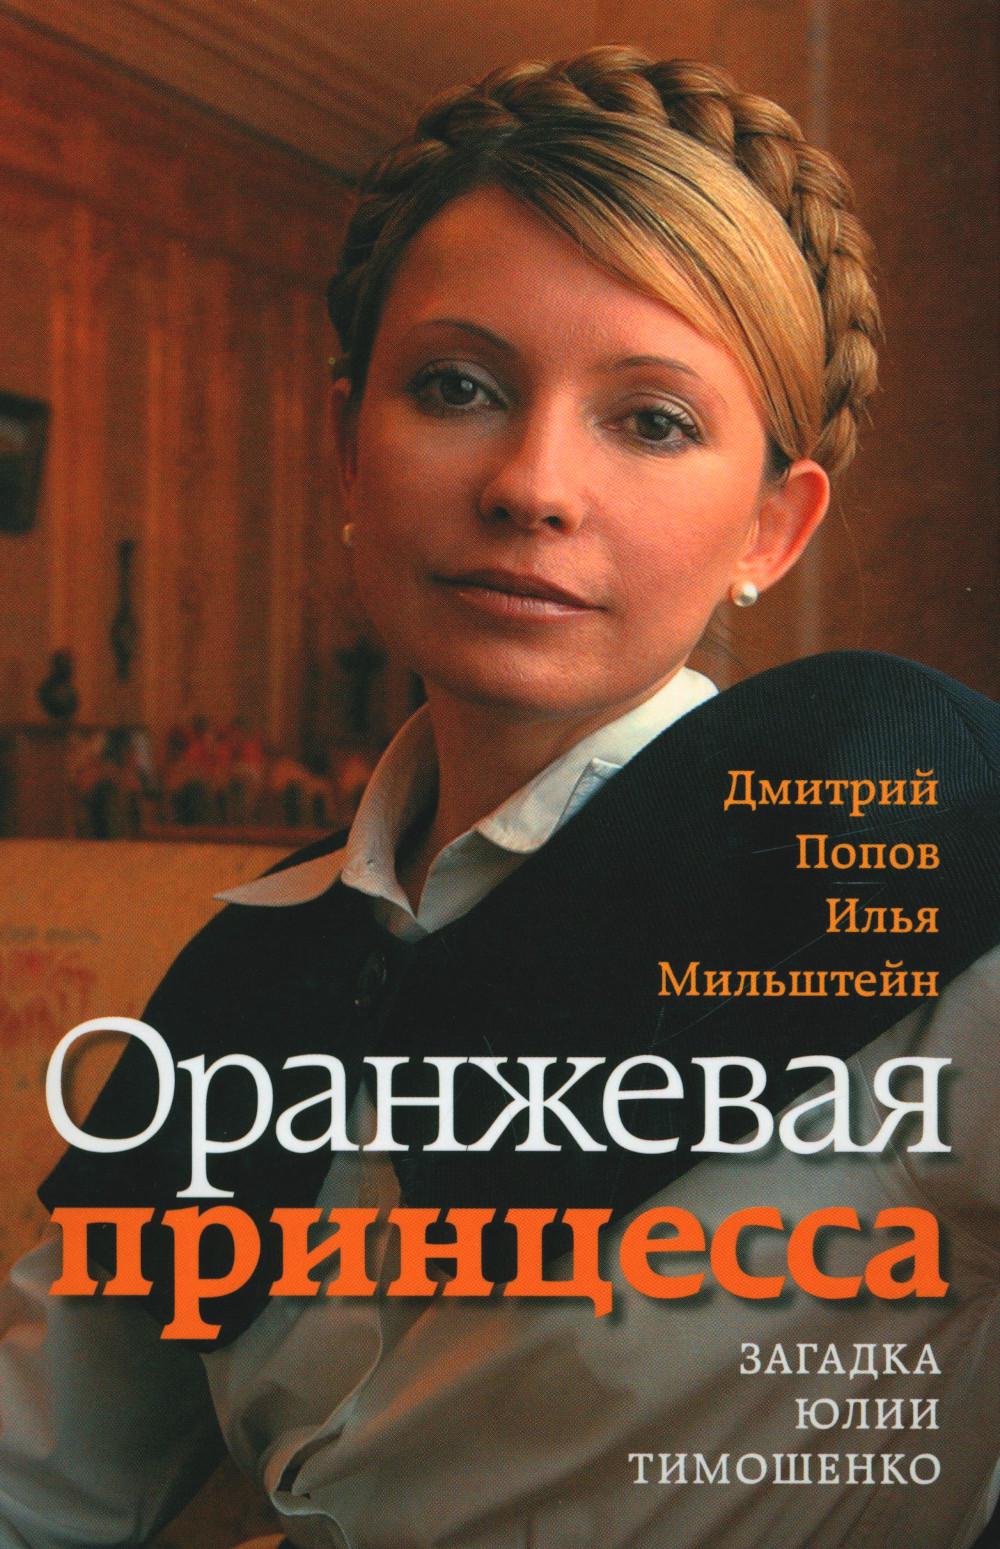 Оранжевая принцесса.Загадка Юлии Тимошенко